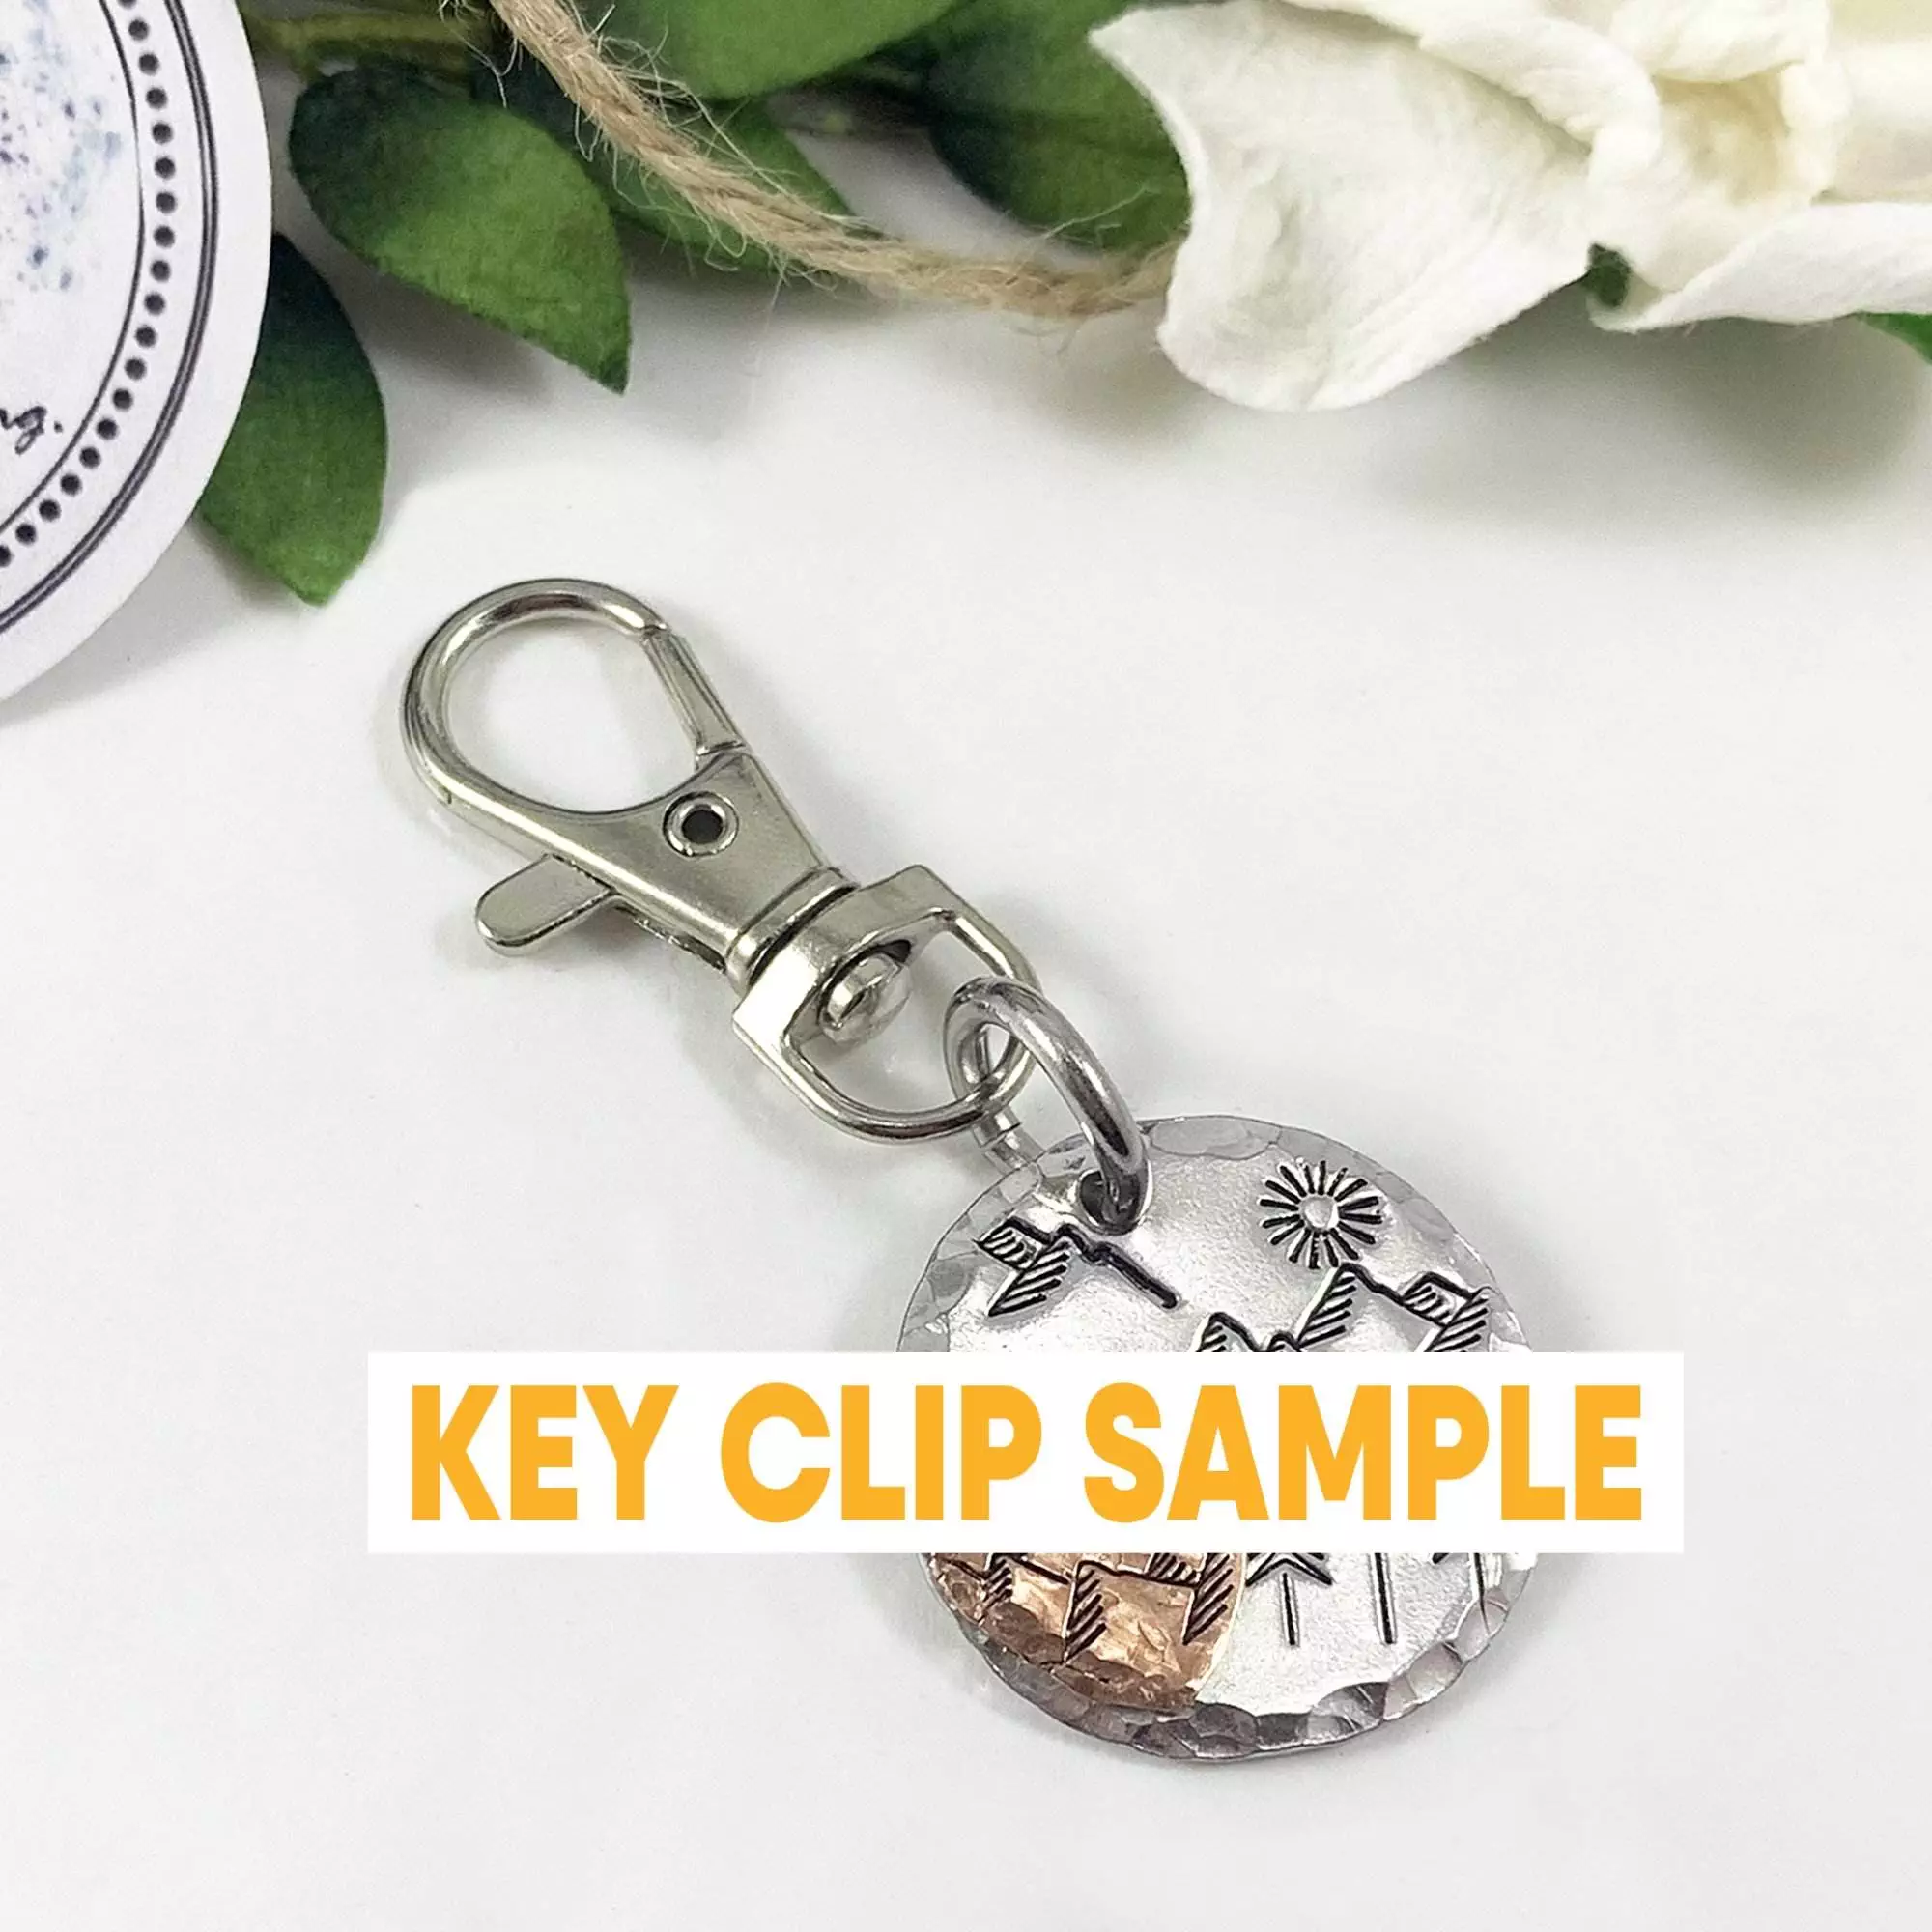 1 Key Clip sample